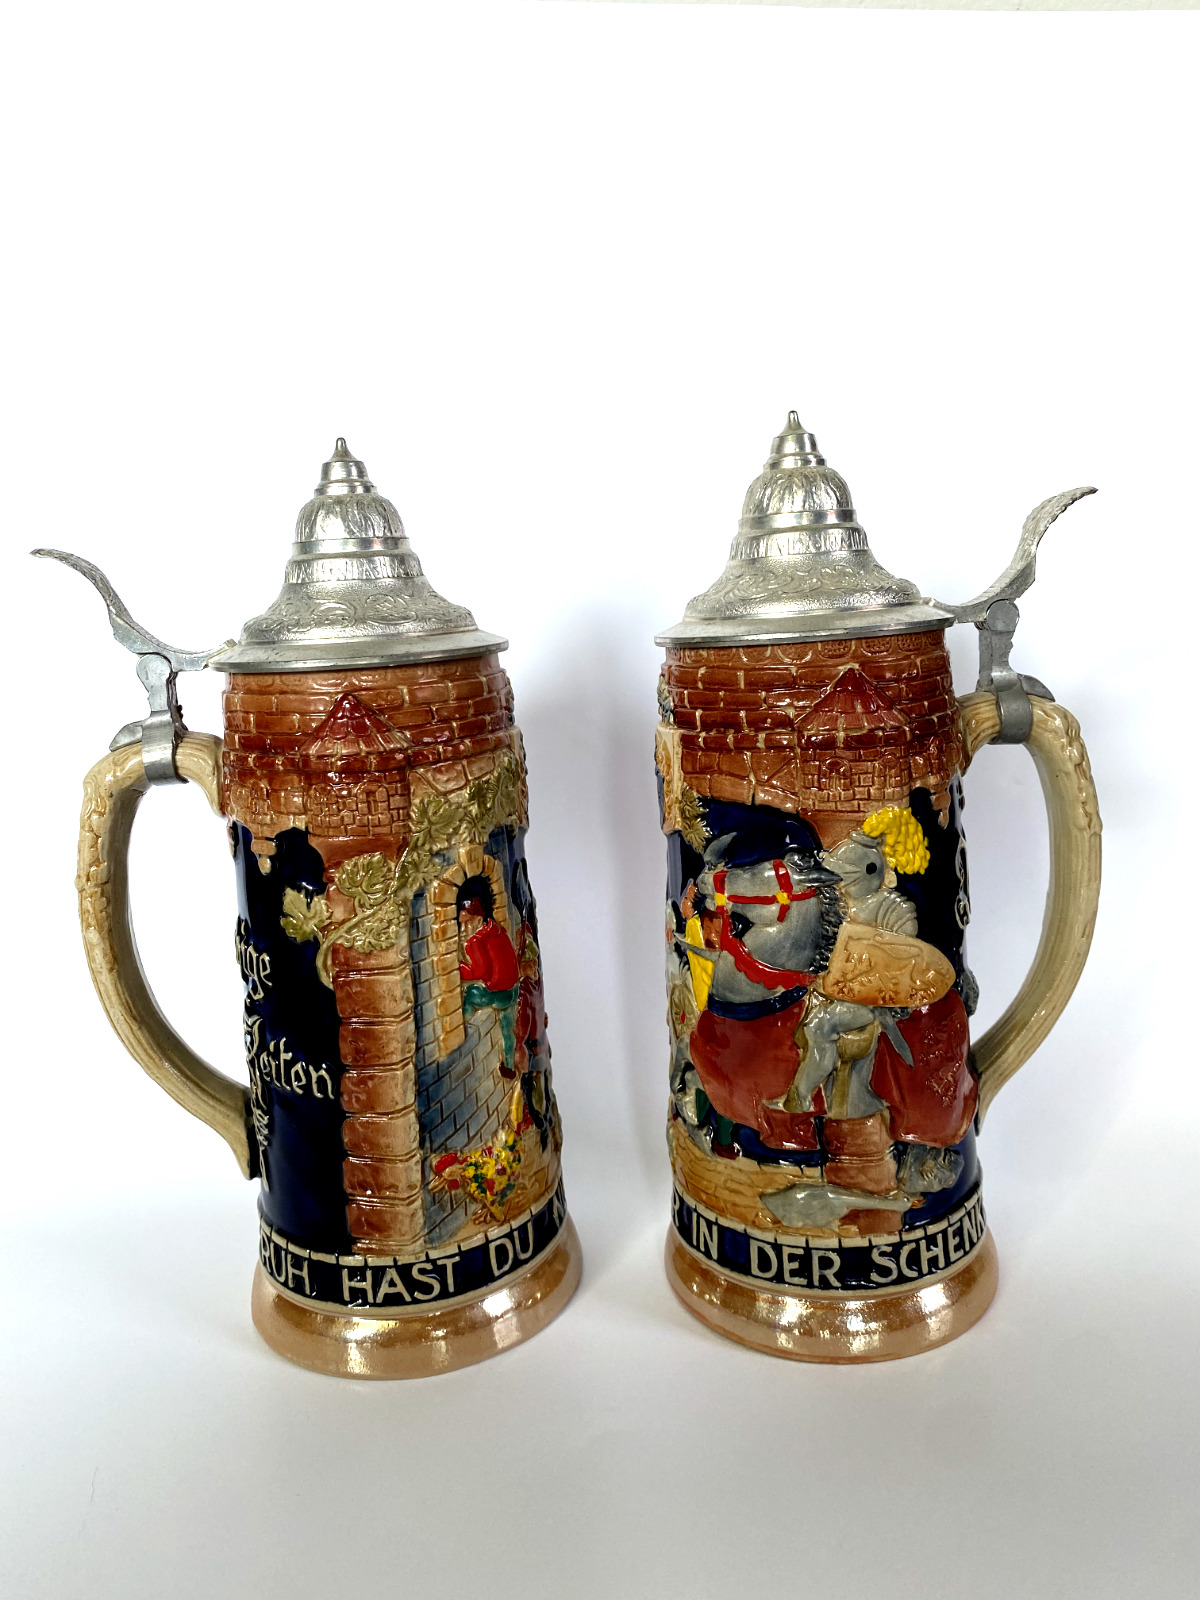 Two Vintage Goebel Beer Stein Lidded West Germany Ruh Hast Du Nur In Der Schenke